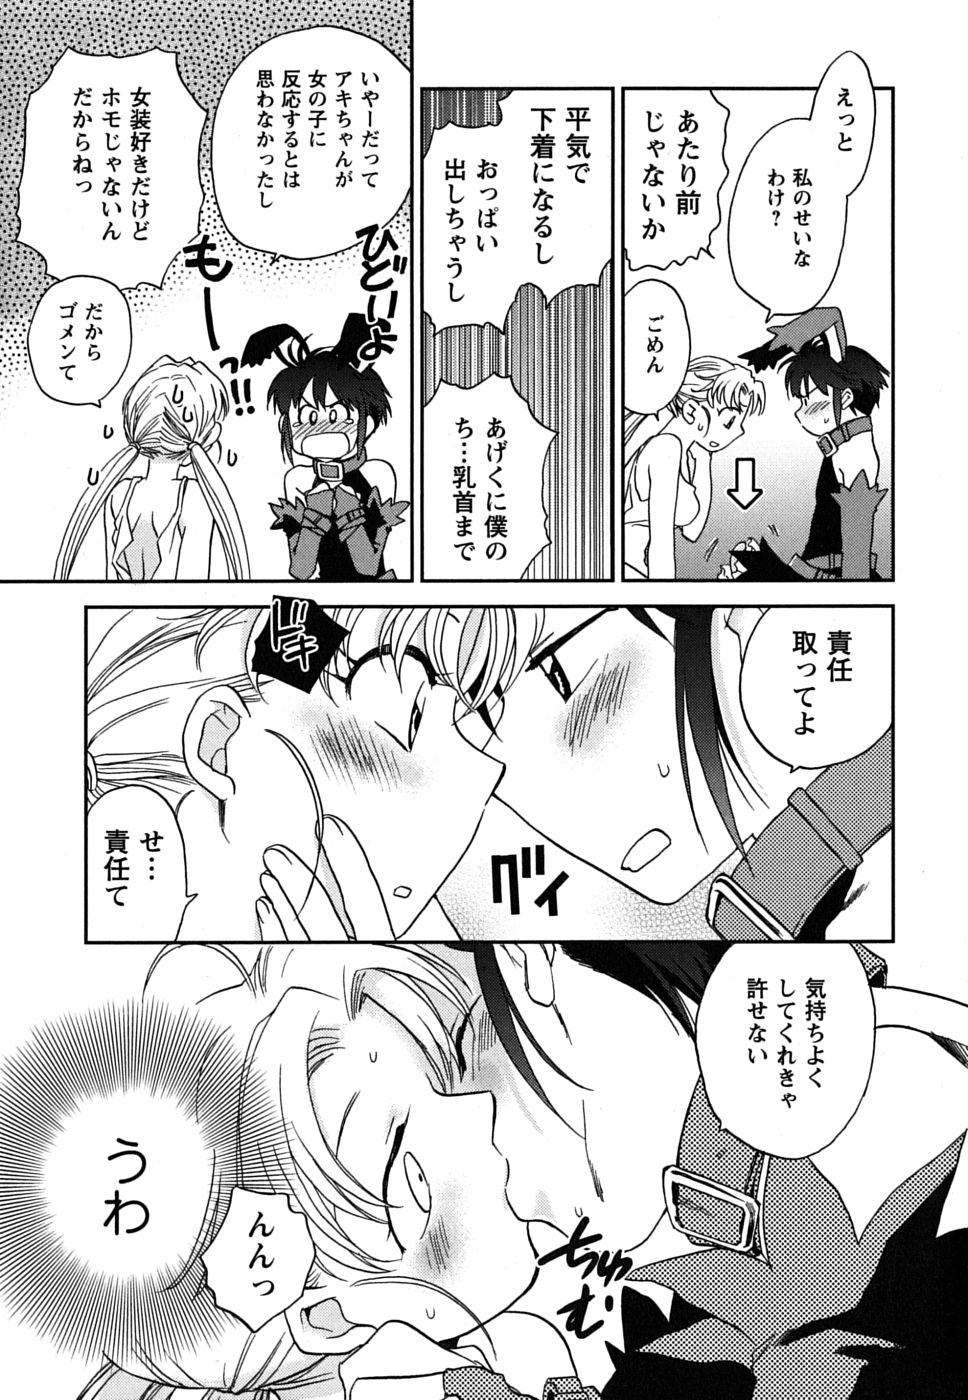 [Okano Ahiru] Shoujo no Mousou wa Itsu Hiraku? - When does her dream come true? page 40 full